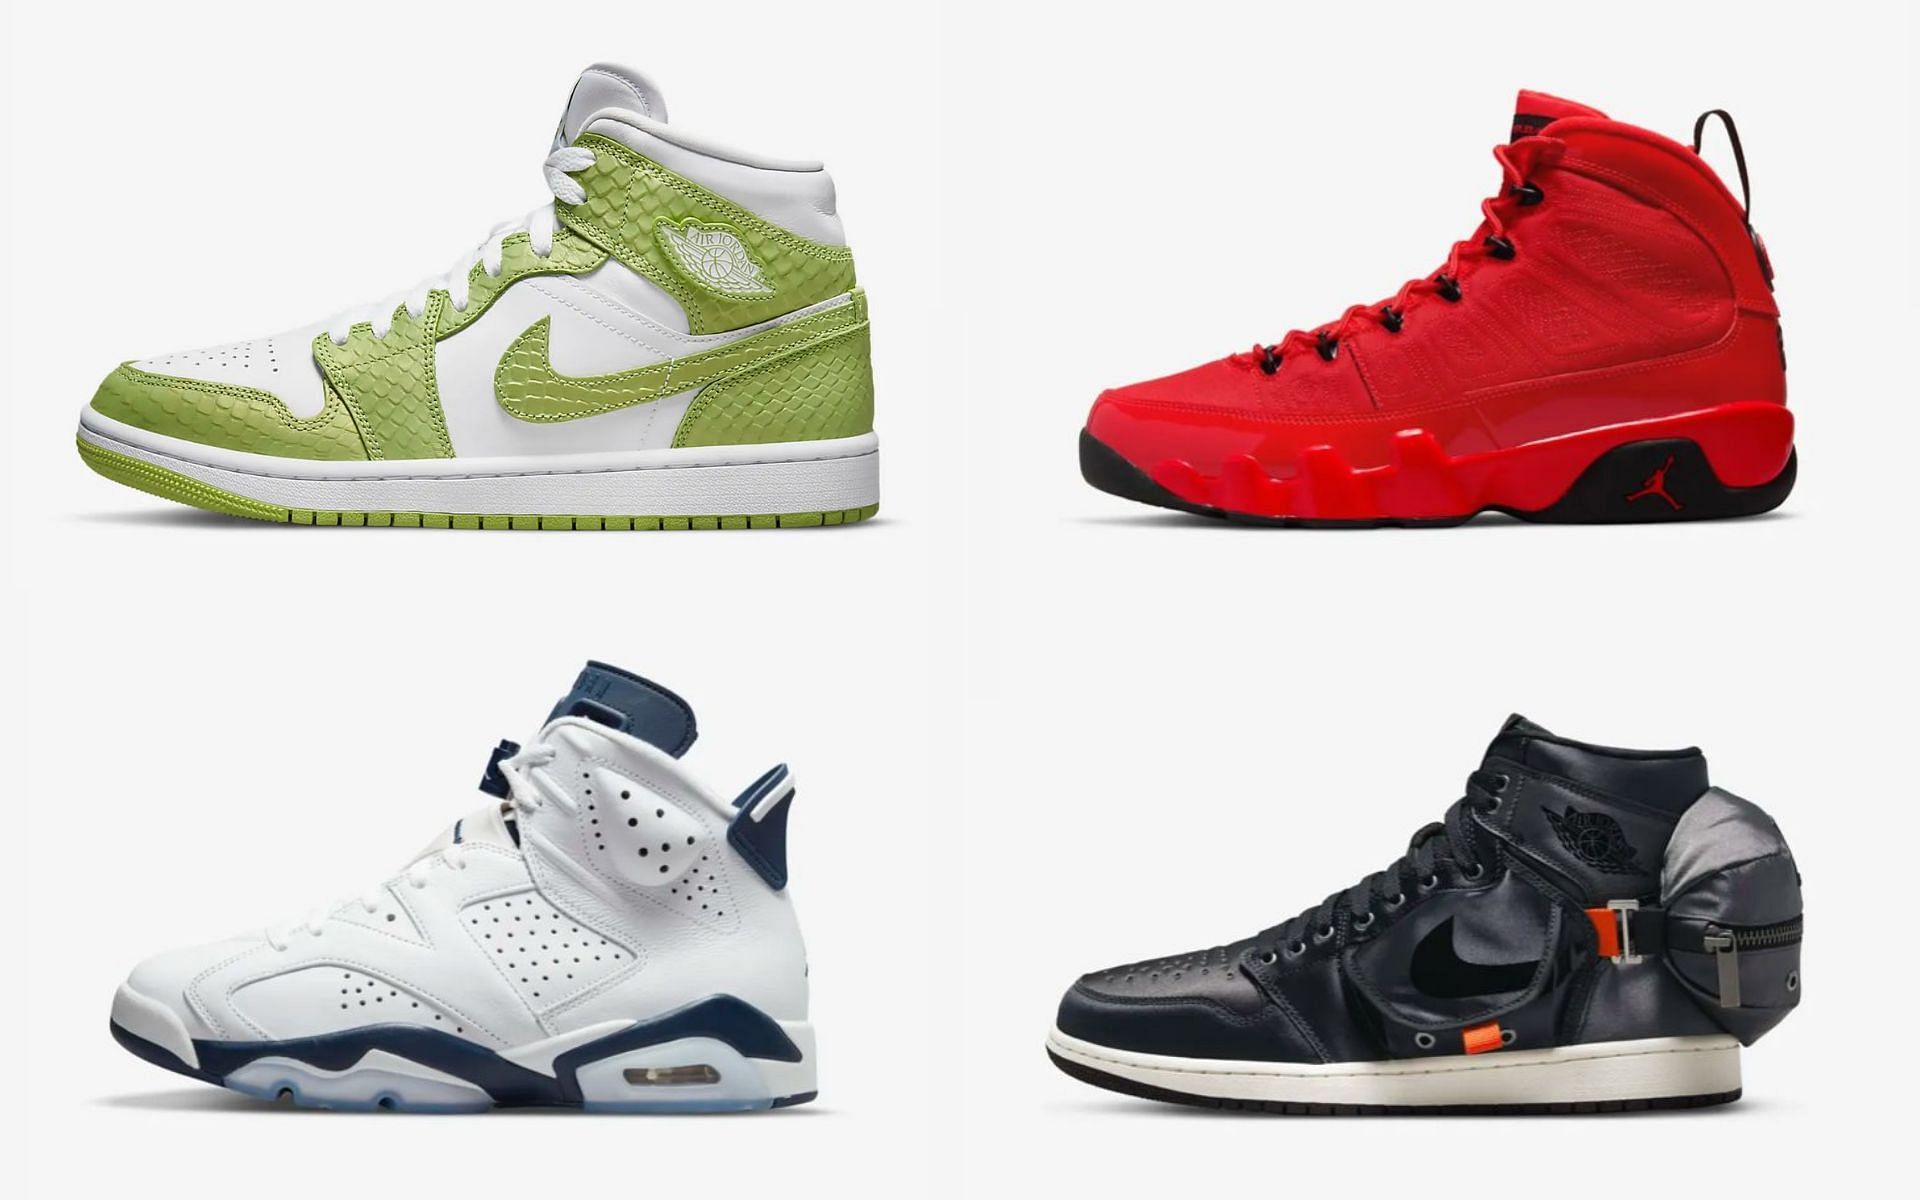 Air Jordan May 2022 releases (Image via Nike)